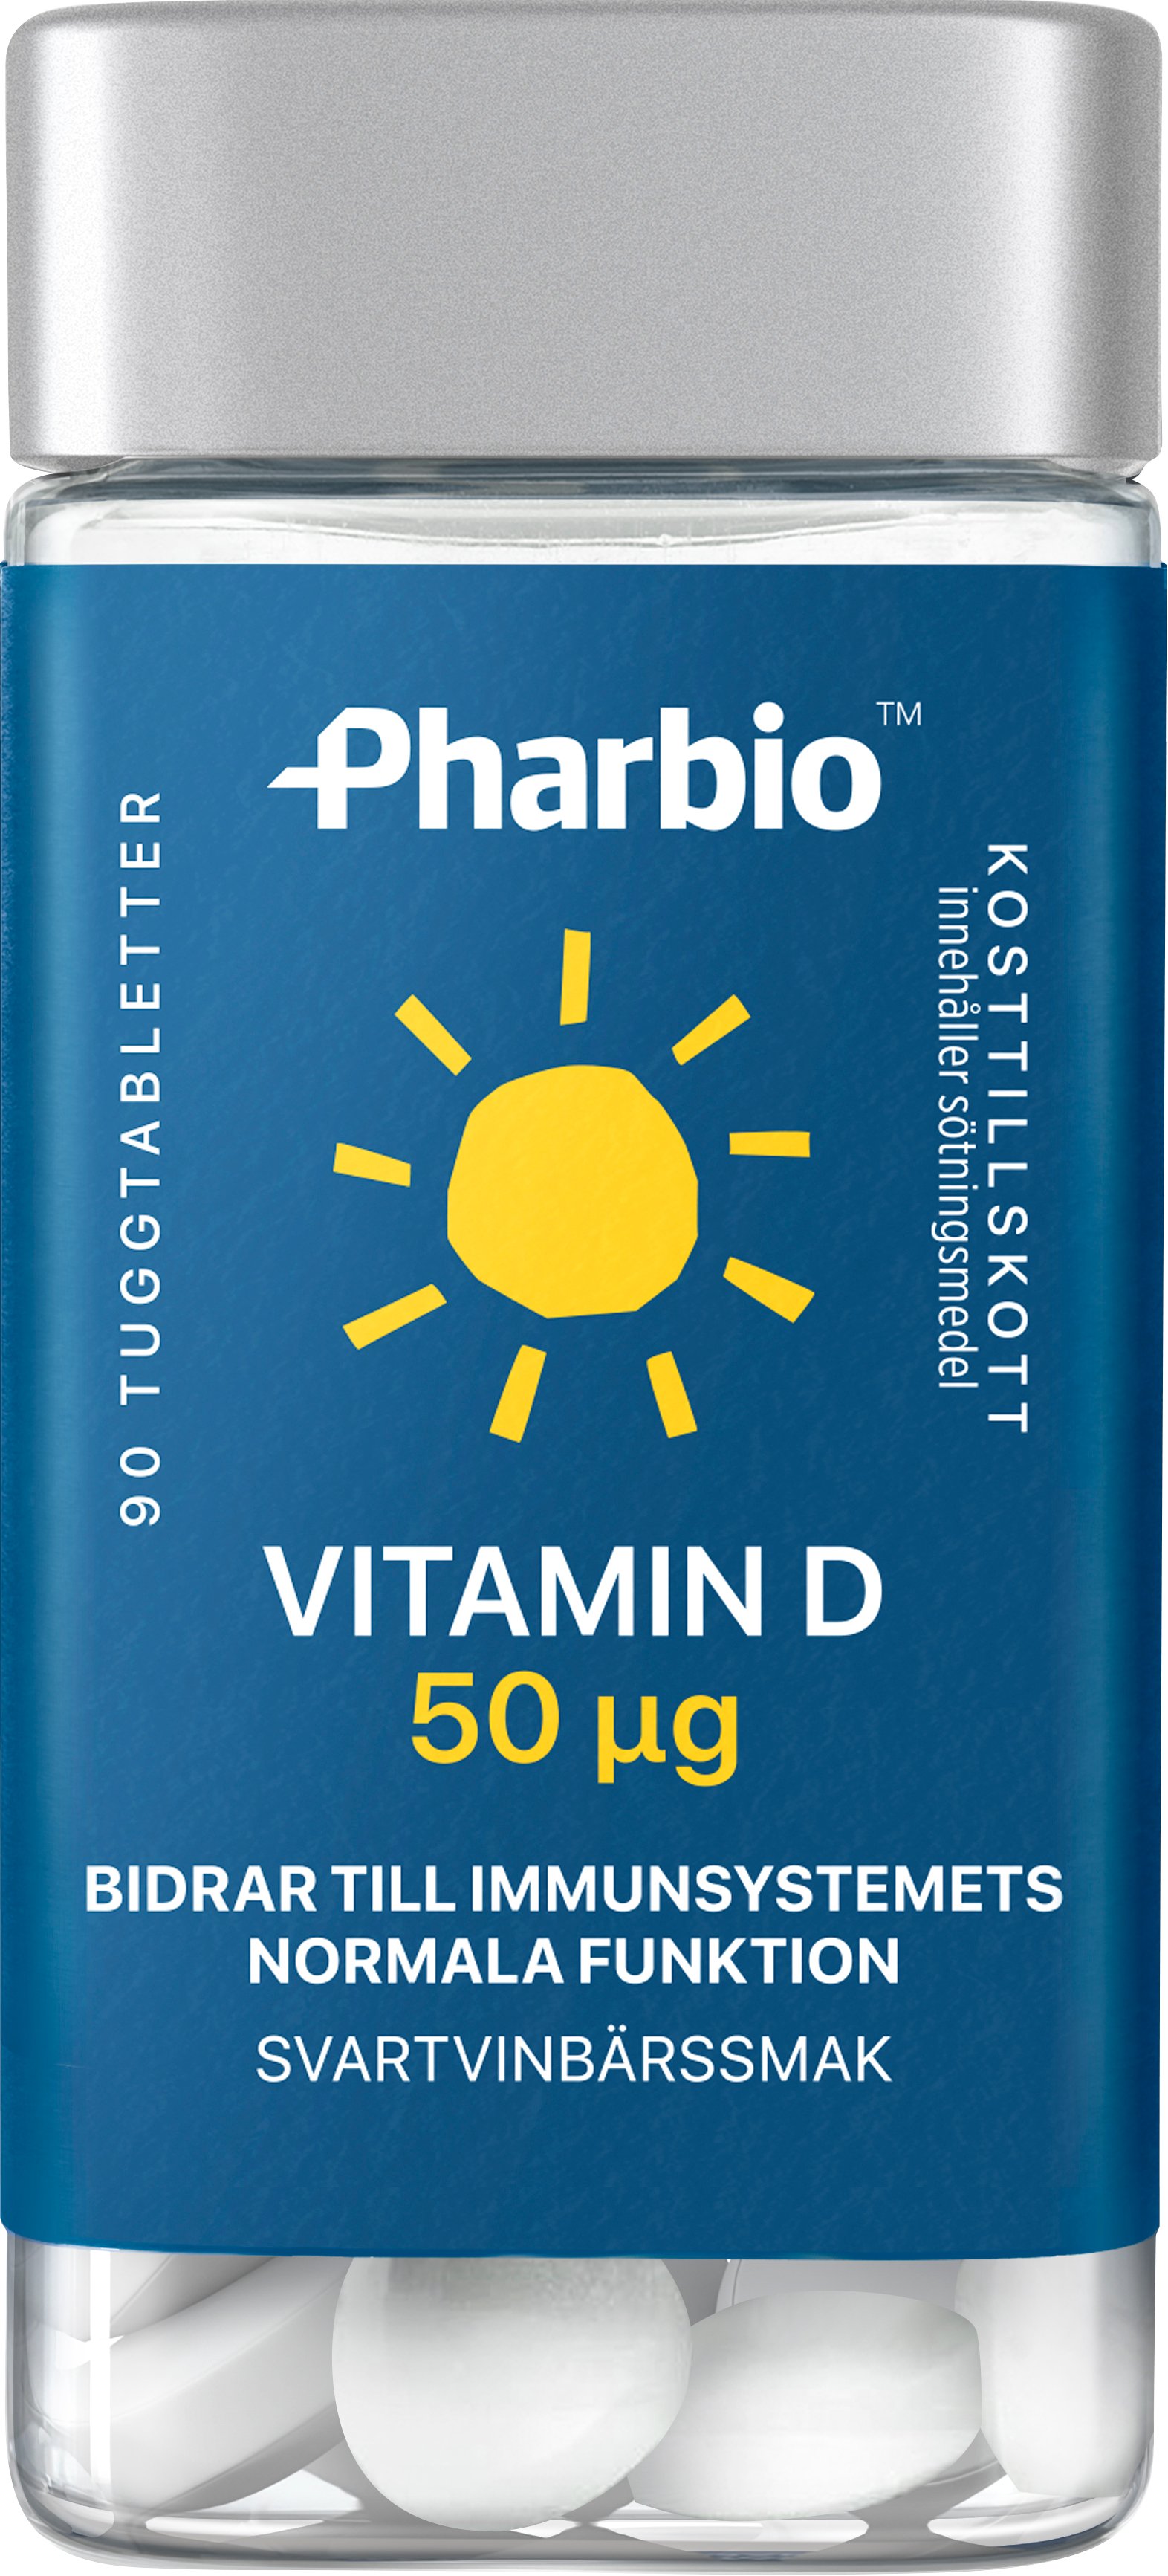 Pharbio Vitamin D 50μg 90 tuggtabletter